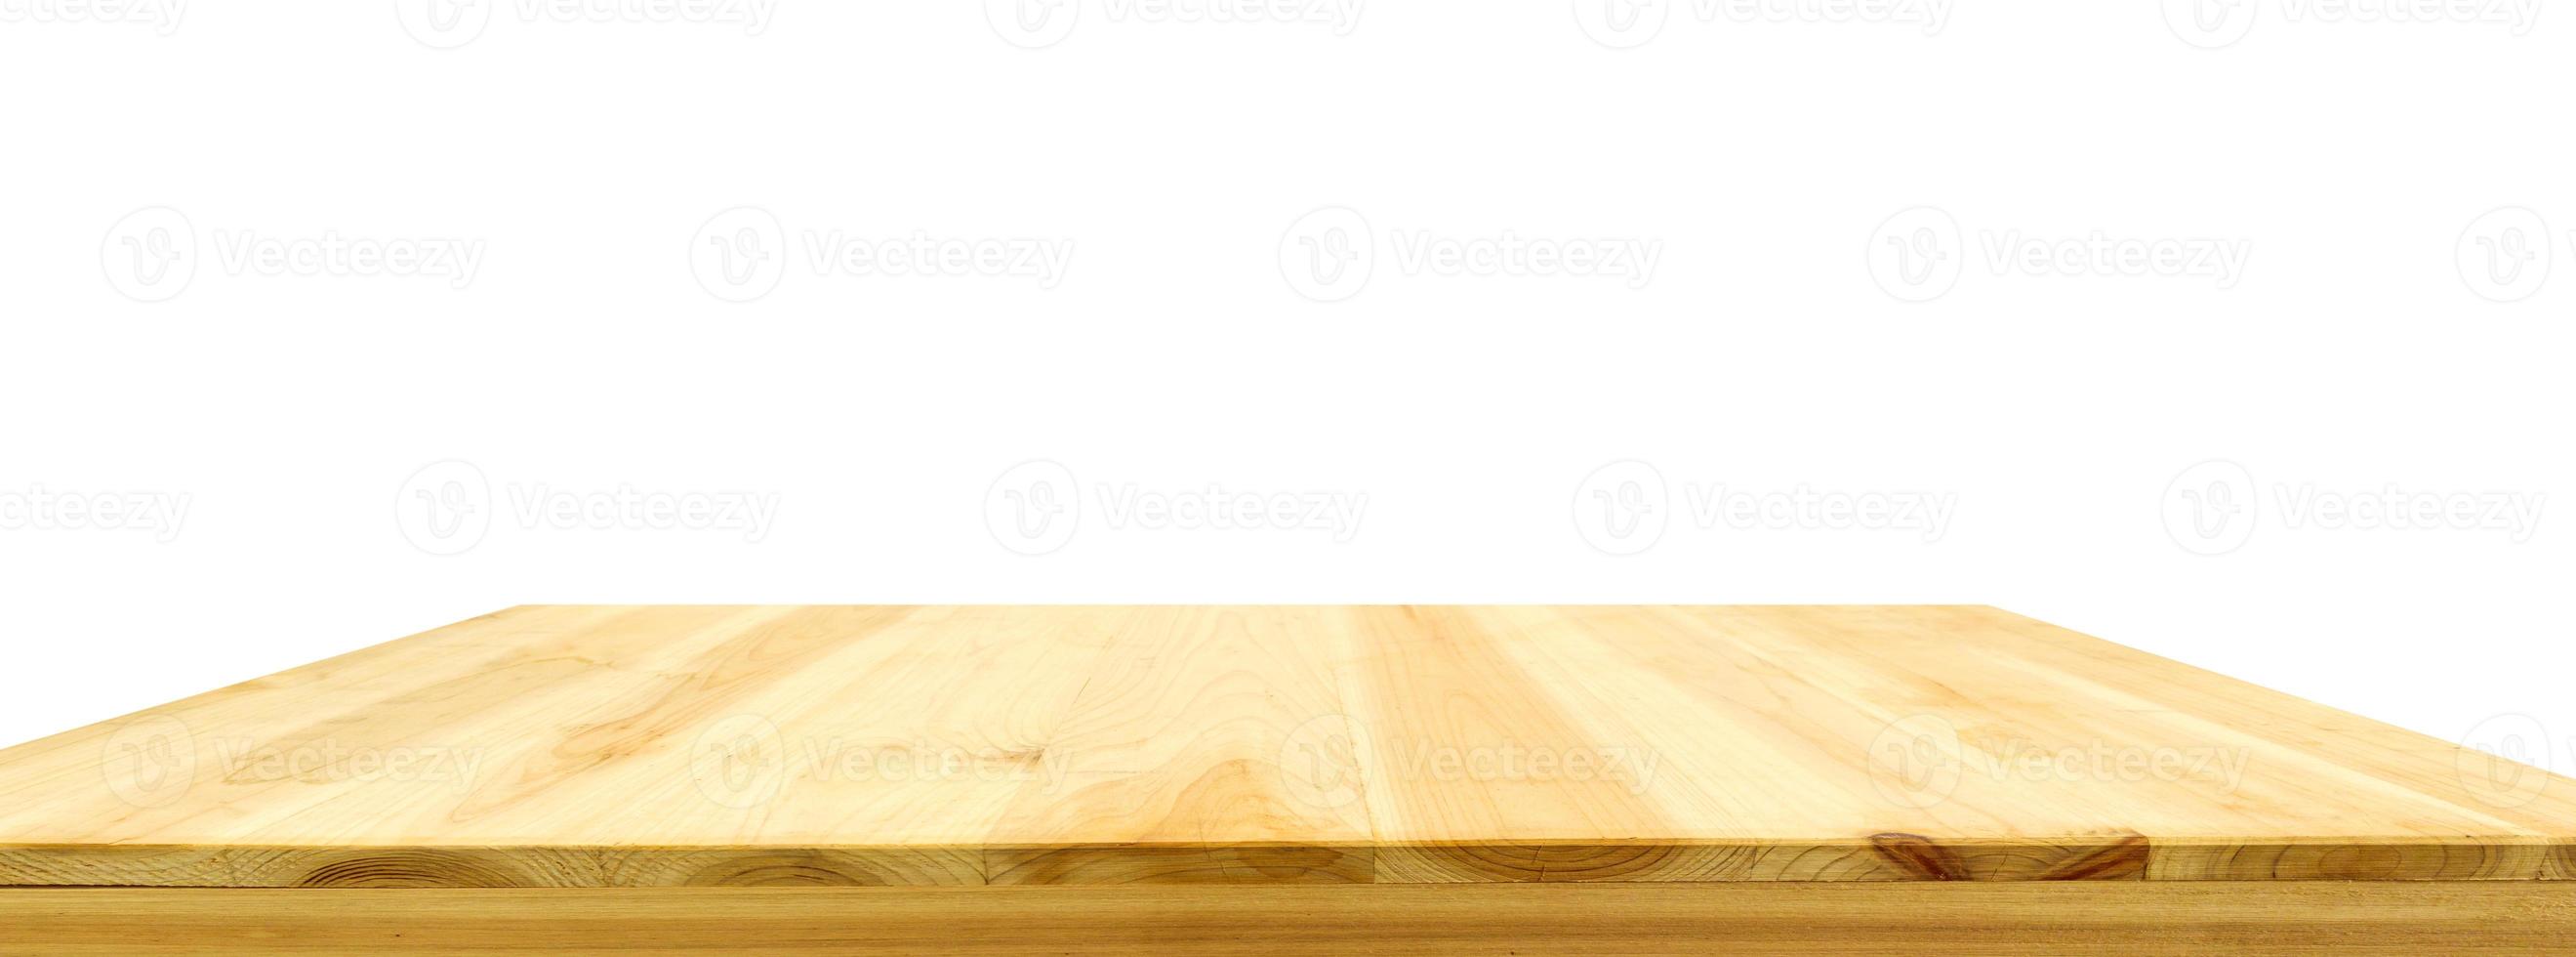 Holztischplatte isoliert auf weißem Hintergrund foto